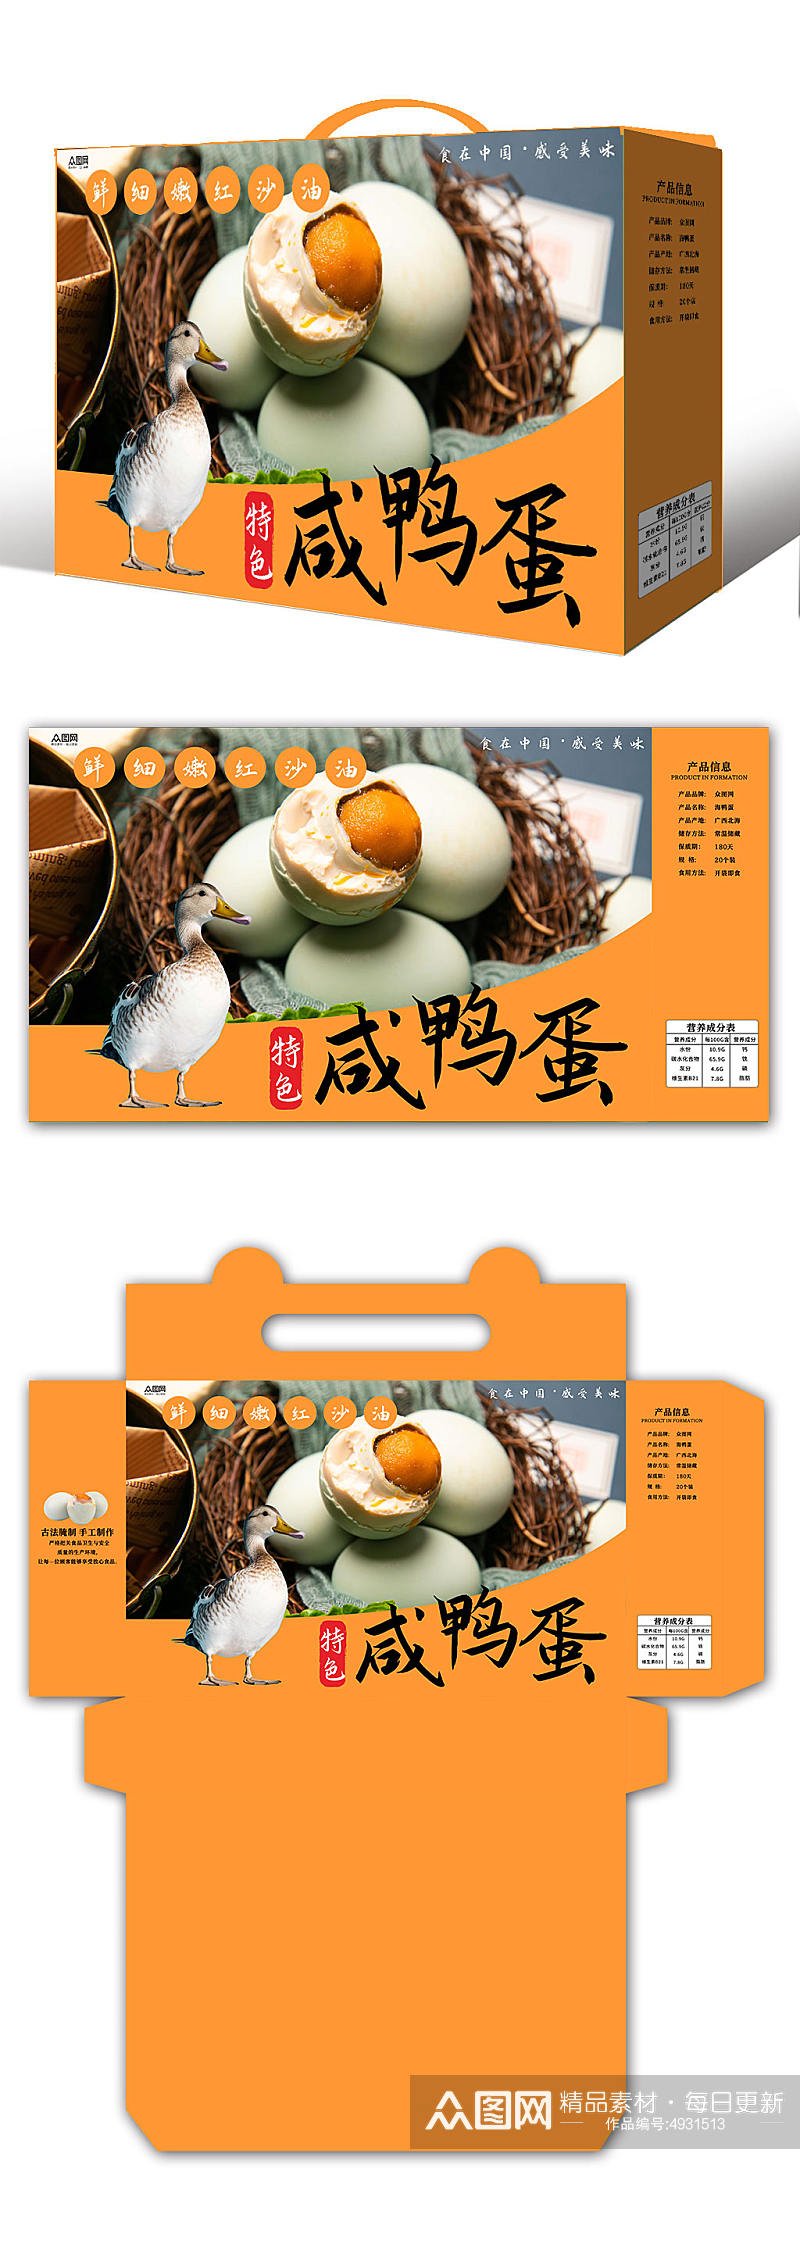 咸鸭蛋海鸭蛋美食包装礼盒设计素材